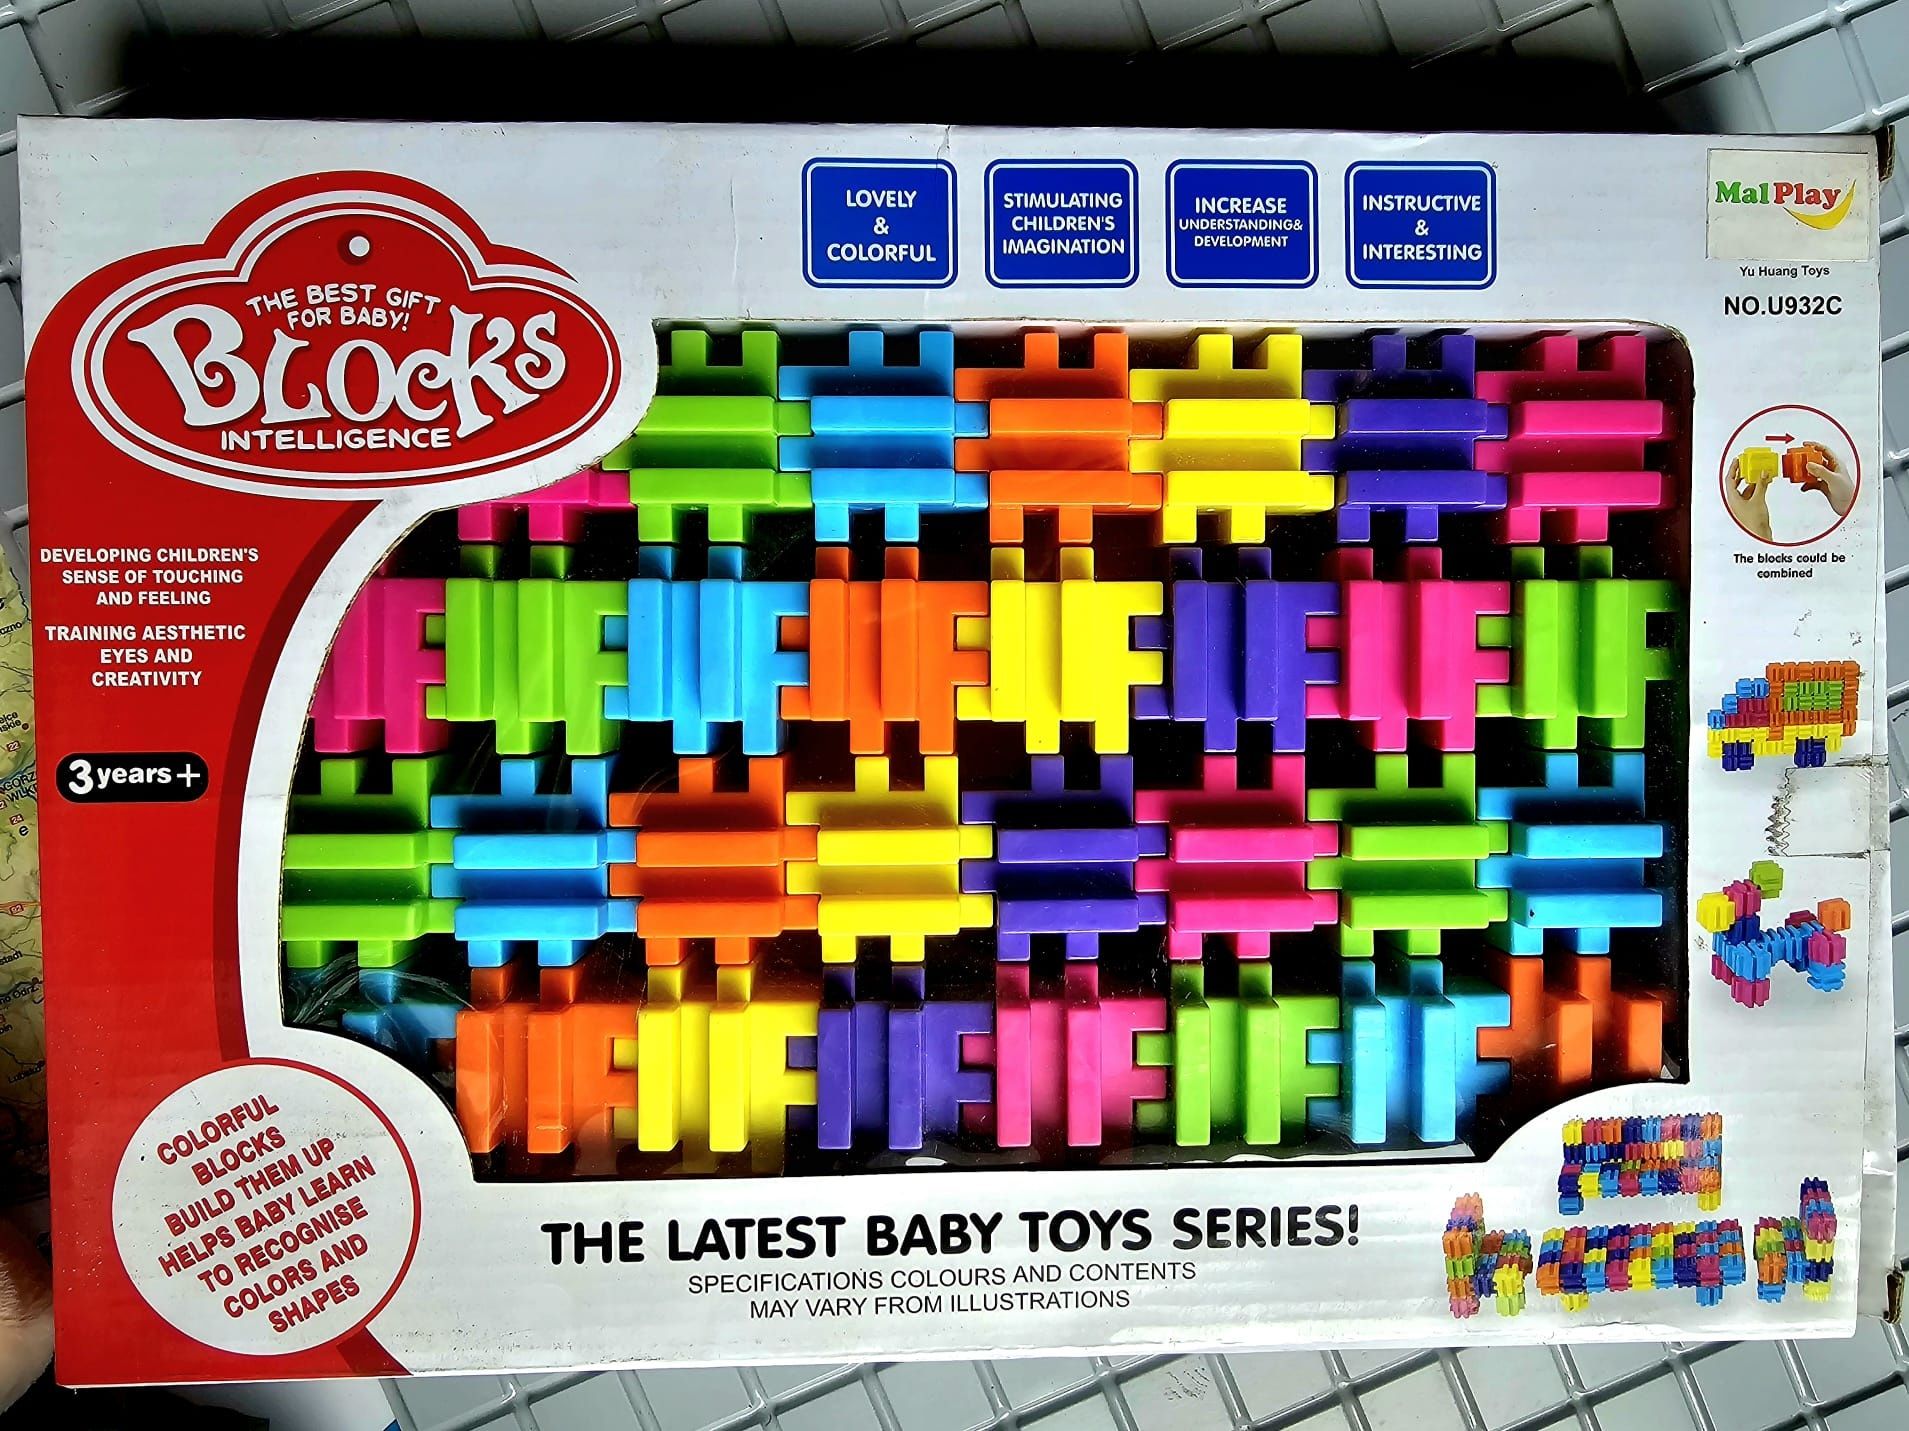 Nowe Klocki Konstrukcyjne bezpieczne kostki - zabawki